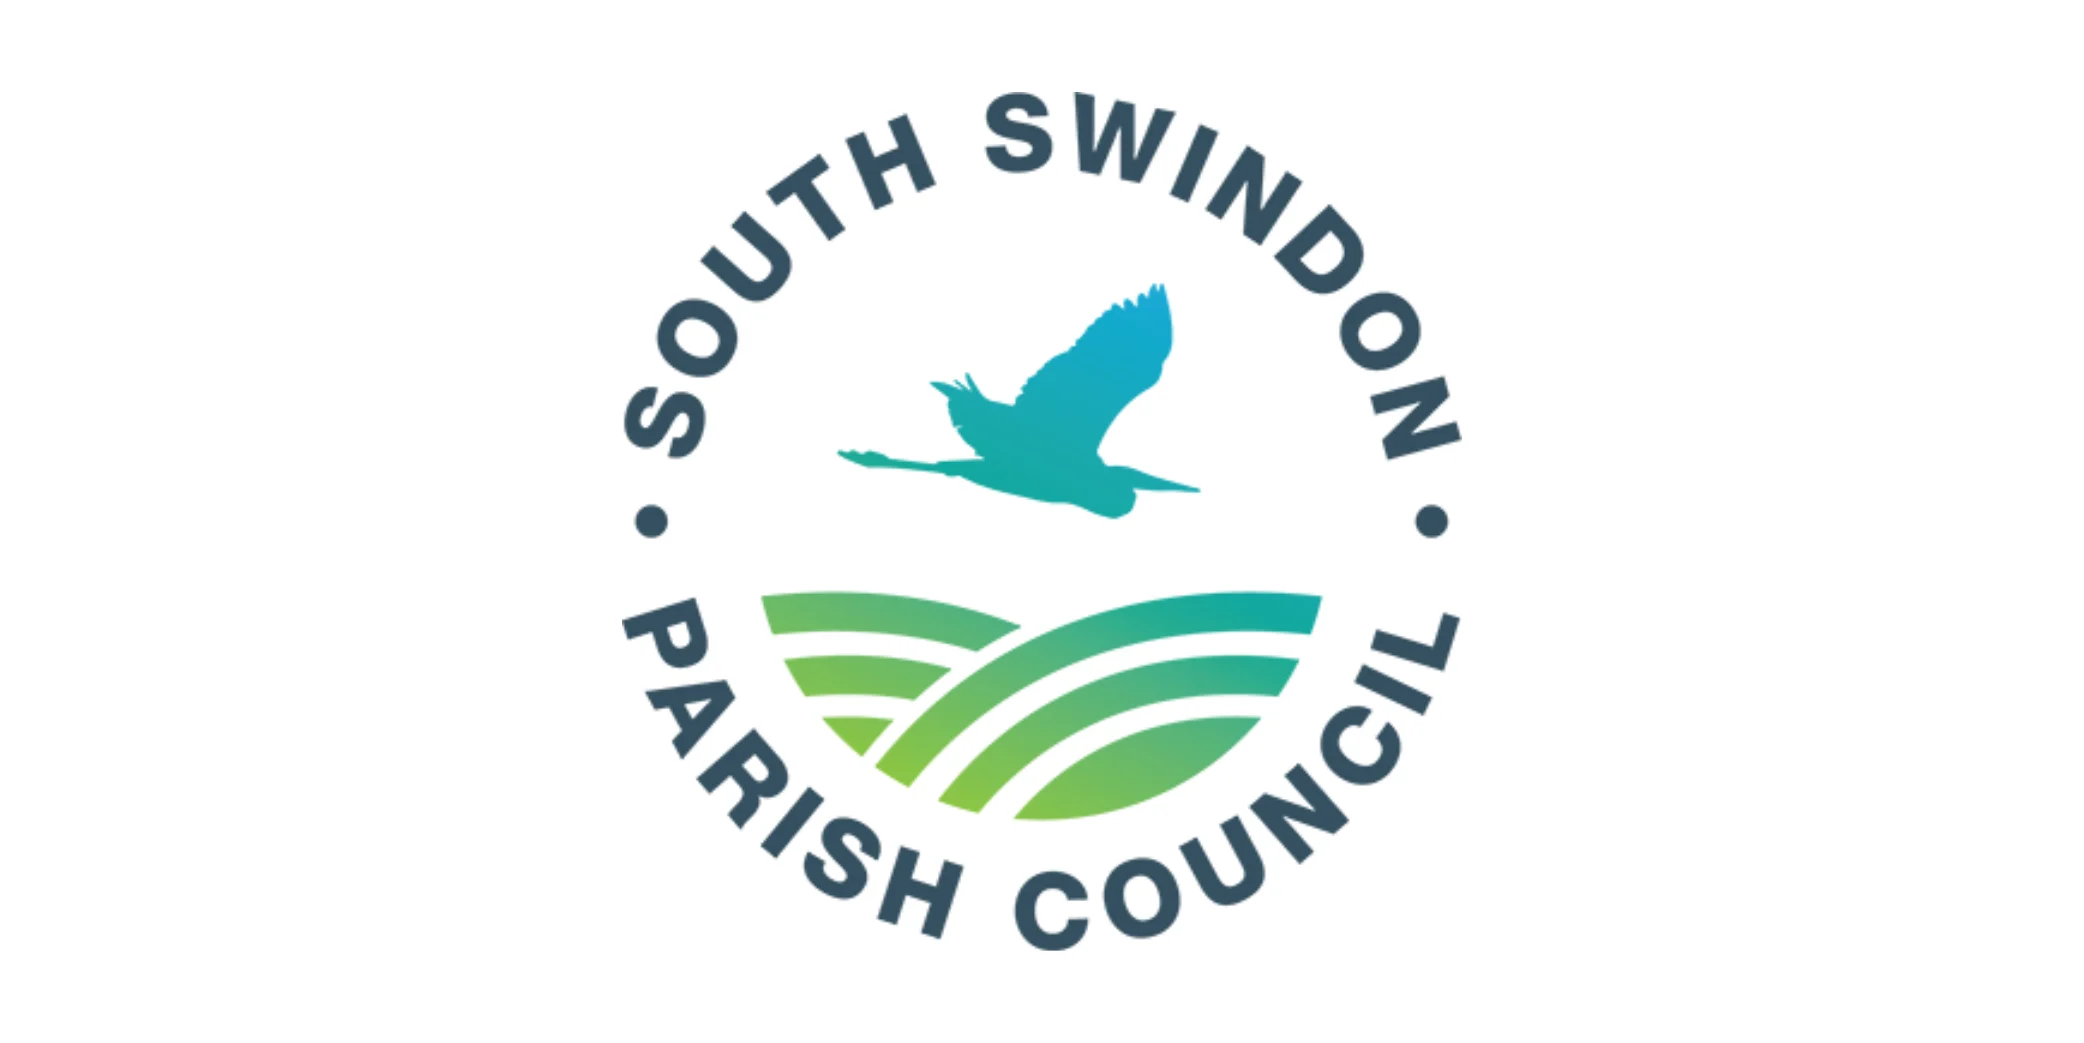 South Swindon Parish Council